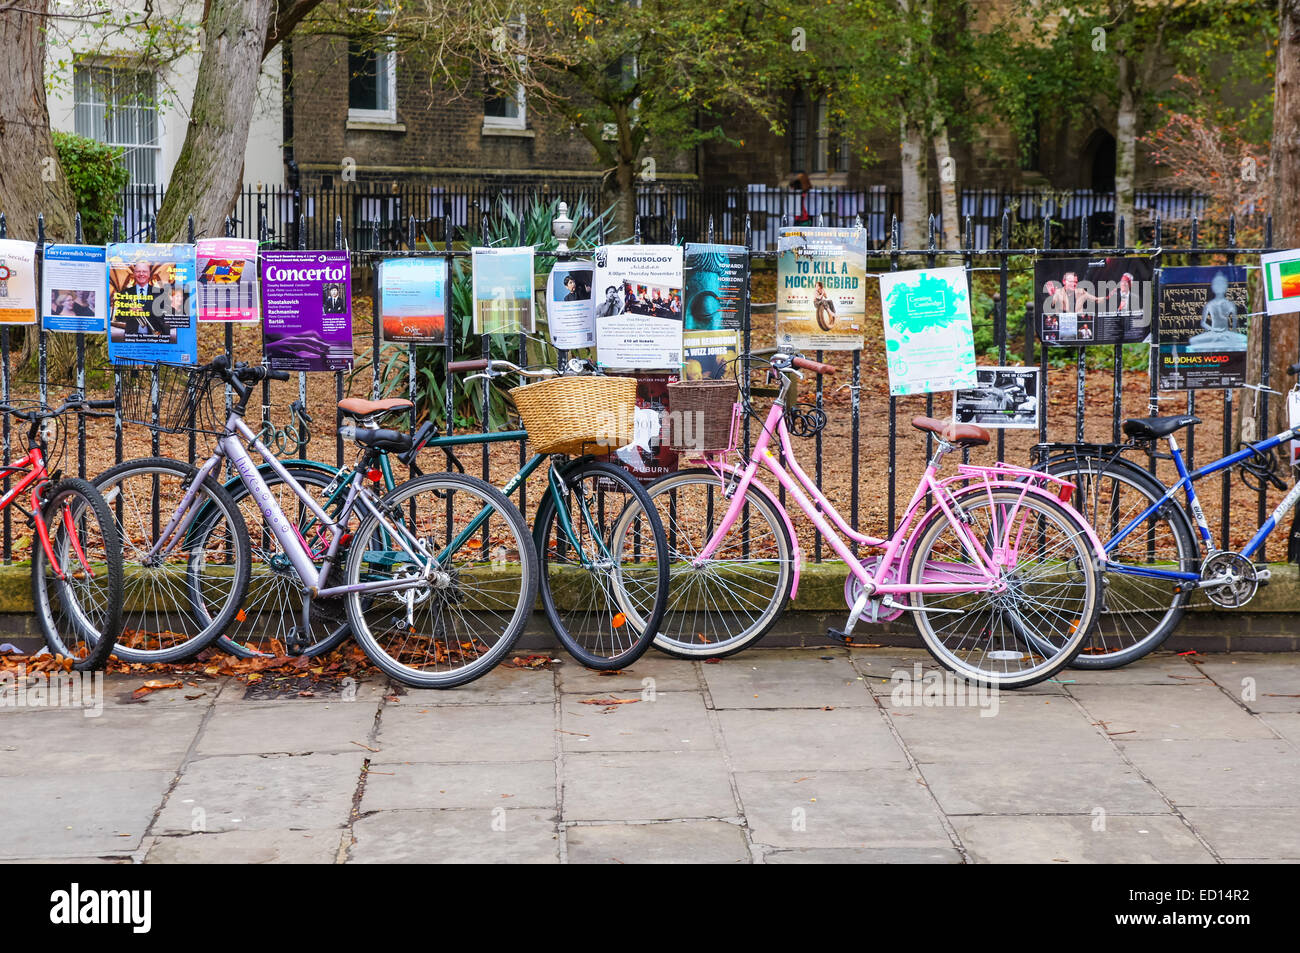 Les vélos enchaînés à clôture métallique à Cambridge Cambridgeshire Angleterre Royaume-Uni UK Banque D'Images